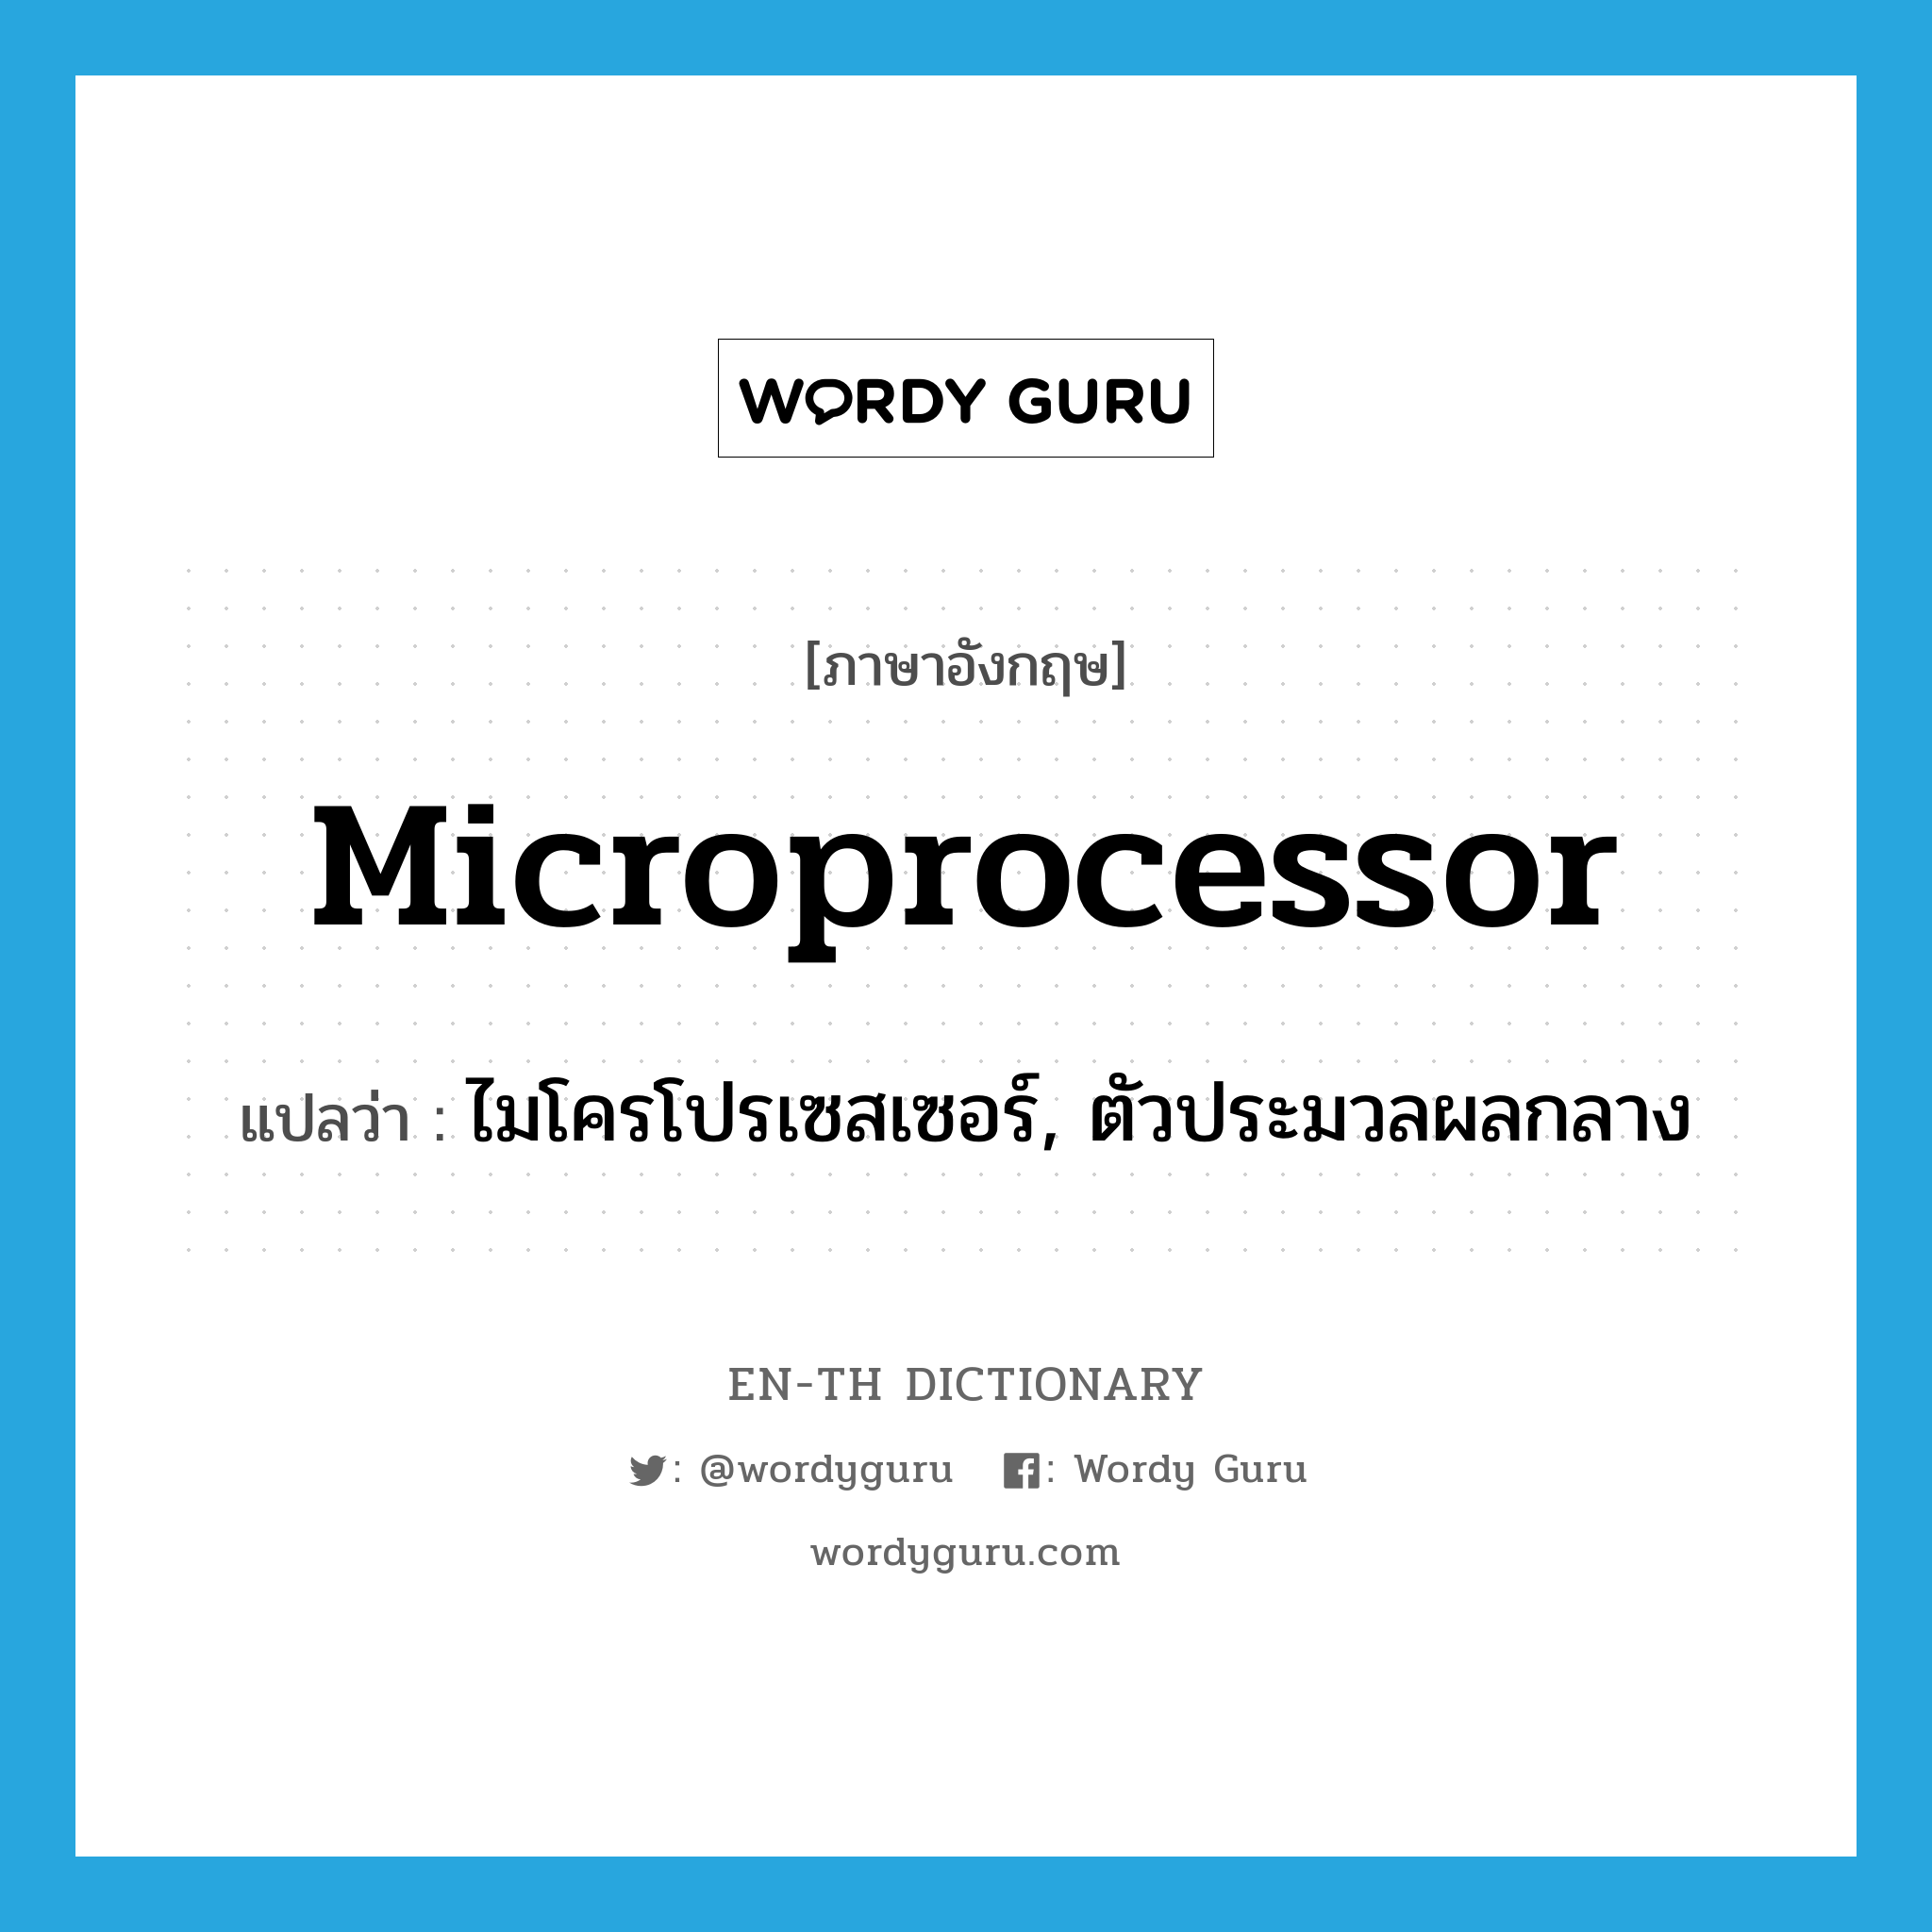 microprocessor แปลว่า?, คำศัพท์ภาษาอังกฤษ microprocessor แปลว่า ไมโครโปรเซสเซอร์, ตัวประมวลผลกลาง ประเภท N หมวด N